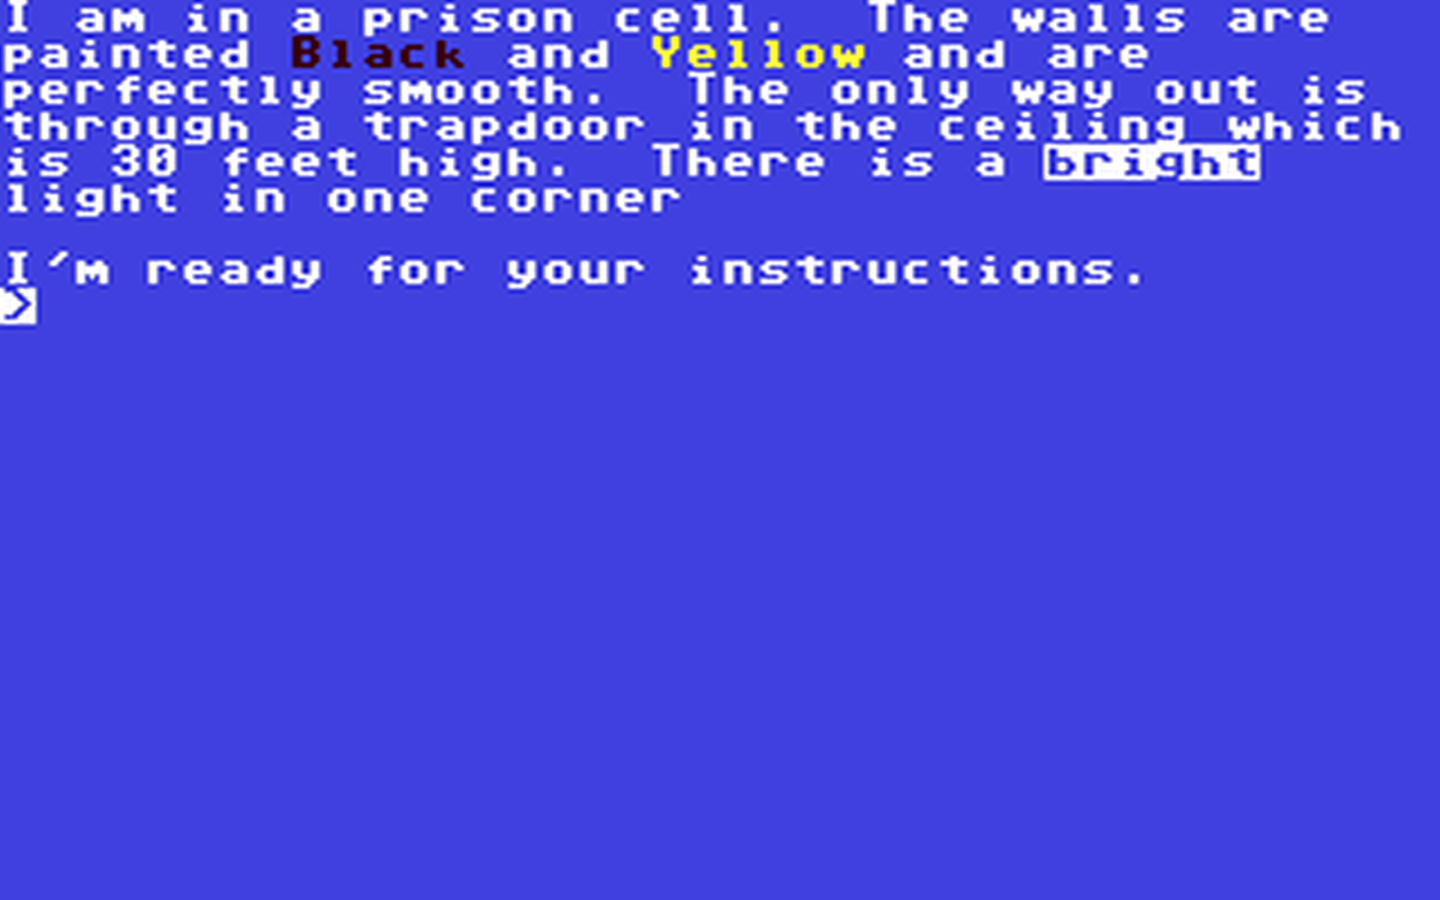 C64 GameBase Graphic_AdventureWriter Gilsoft 1983